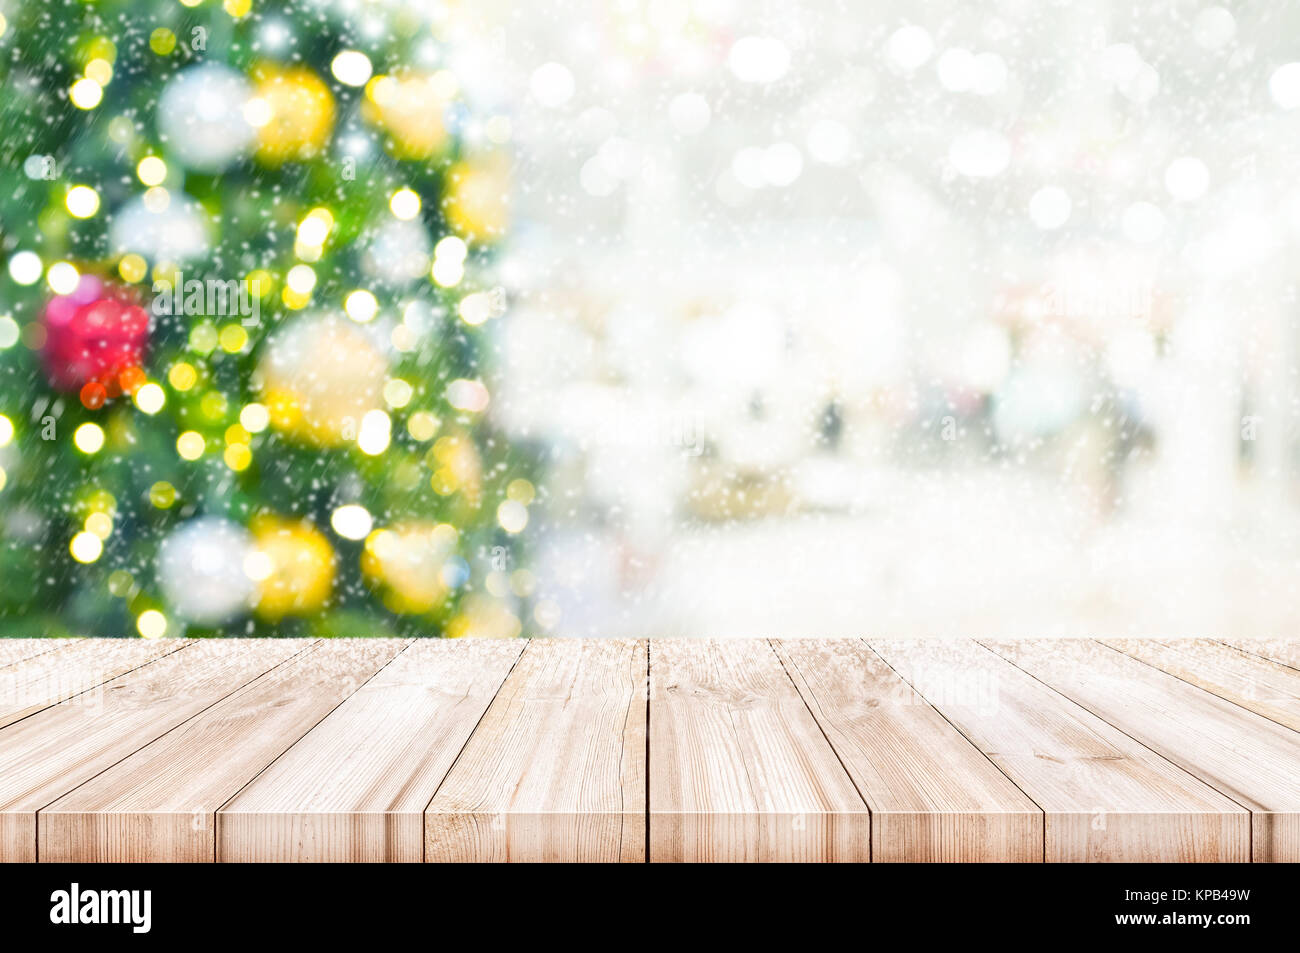 Christmas decoration: Mùa lễ hội đang đến gần, hãy xem bức ảnh này để ngắm nhìn những trang trí Giáng Sinh lung linh, màu sắc tươi vui và hương thơm đầy cảm hứng, chắc chắn sẽ mang lại cho bạn nhiều cảm xúc tuyệt vời.